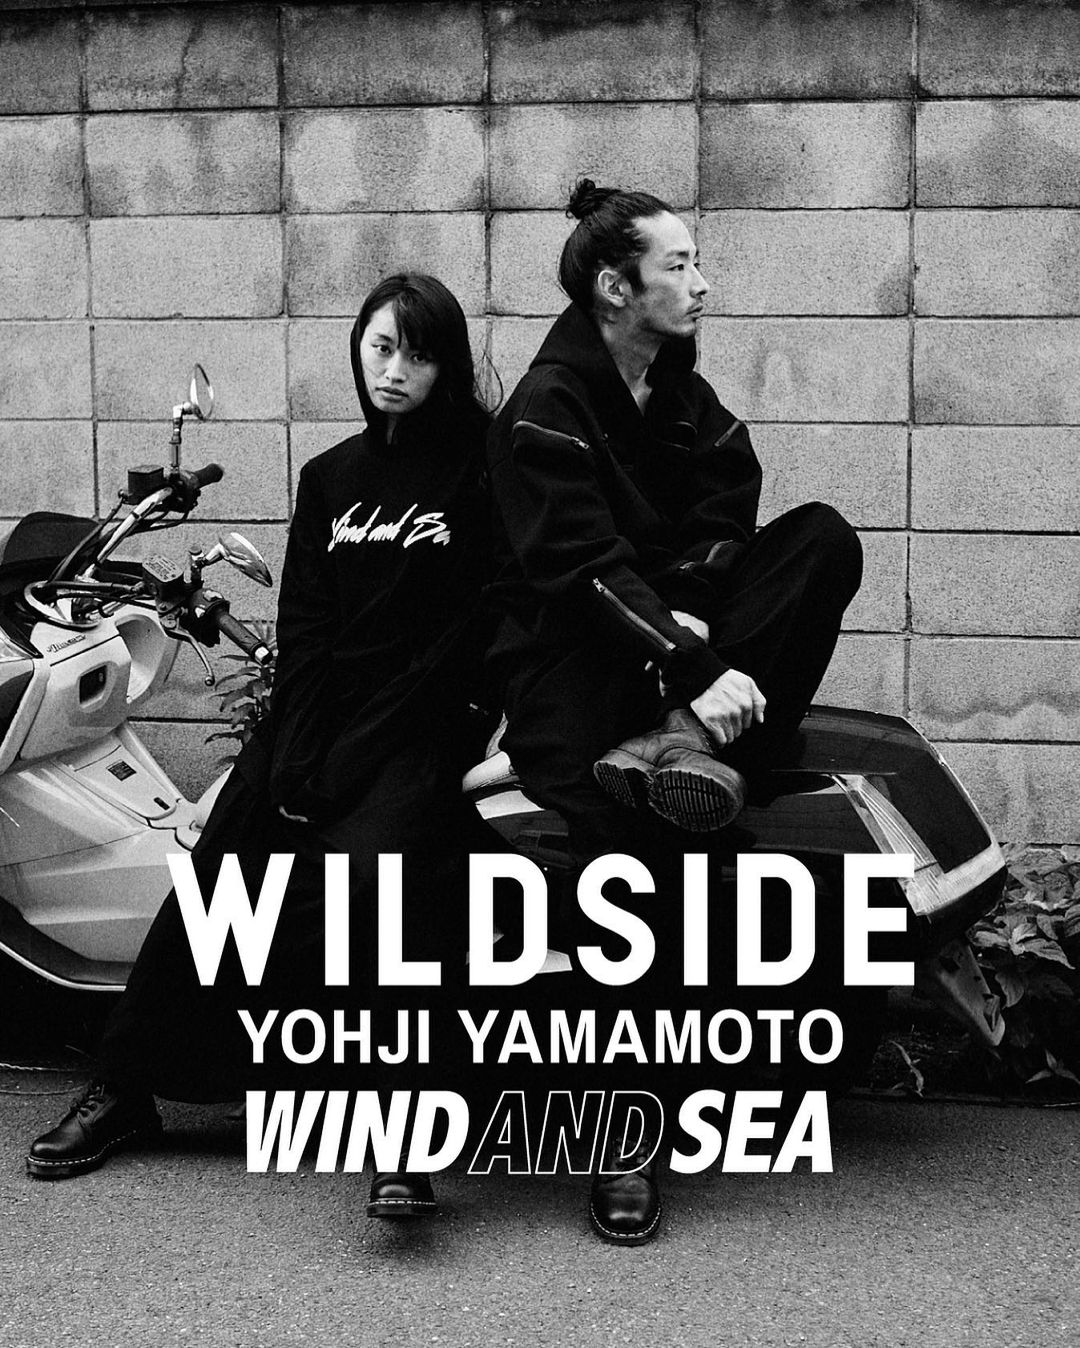 【10/29 発売】WILDSIDE YOHJI YAMAMOTO × WIND AND SEA 最新コラボ (ワイルドサイド ヨウジヤマモト ウィンダンシー)